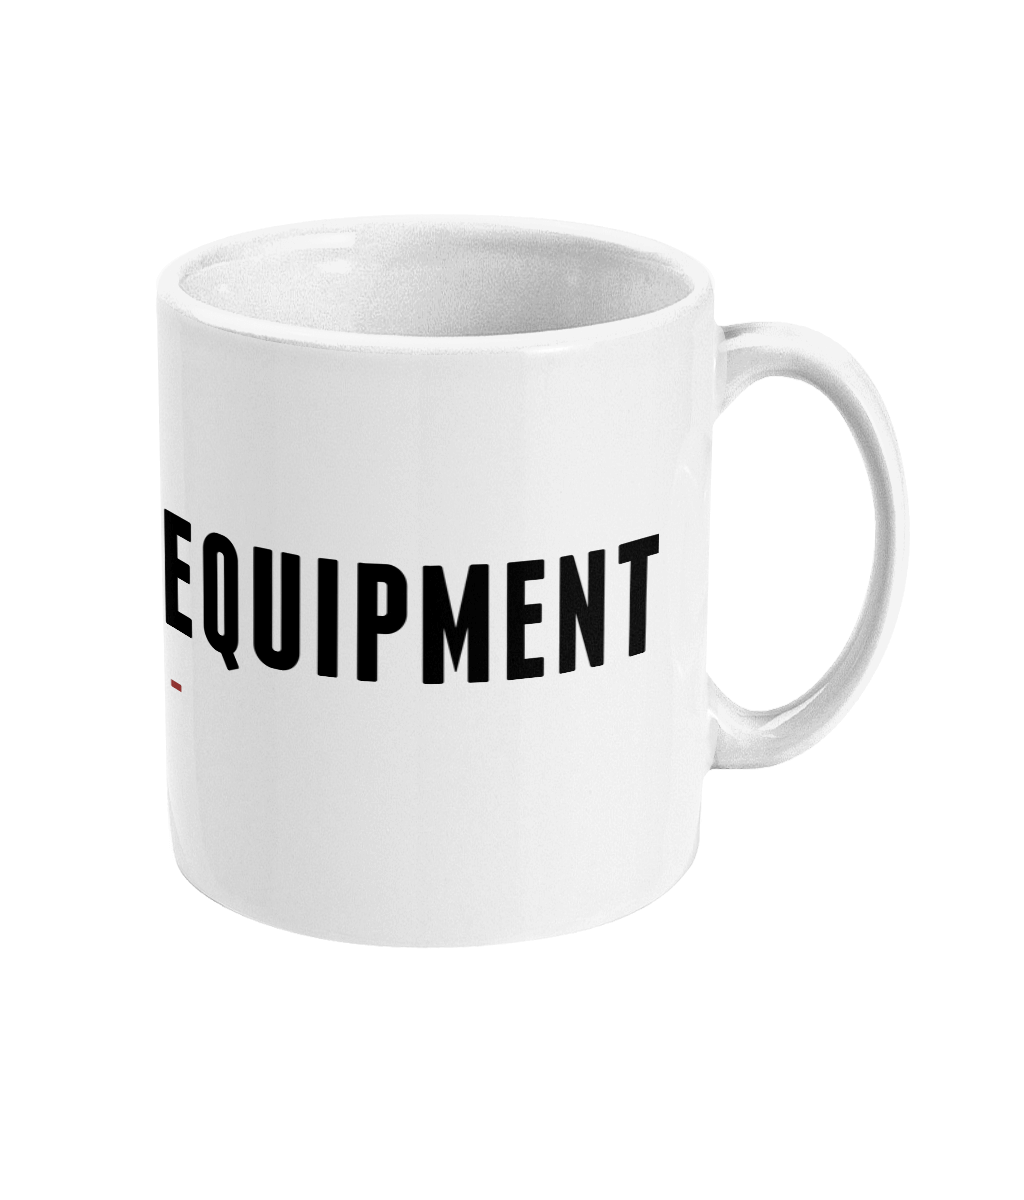 Limitless Equipment Mug - Limitless Equipment